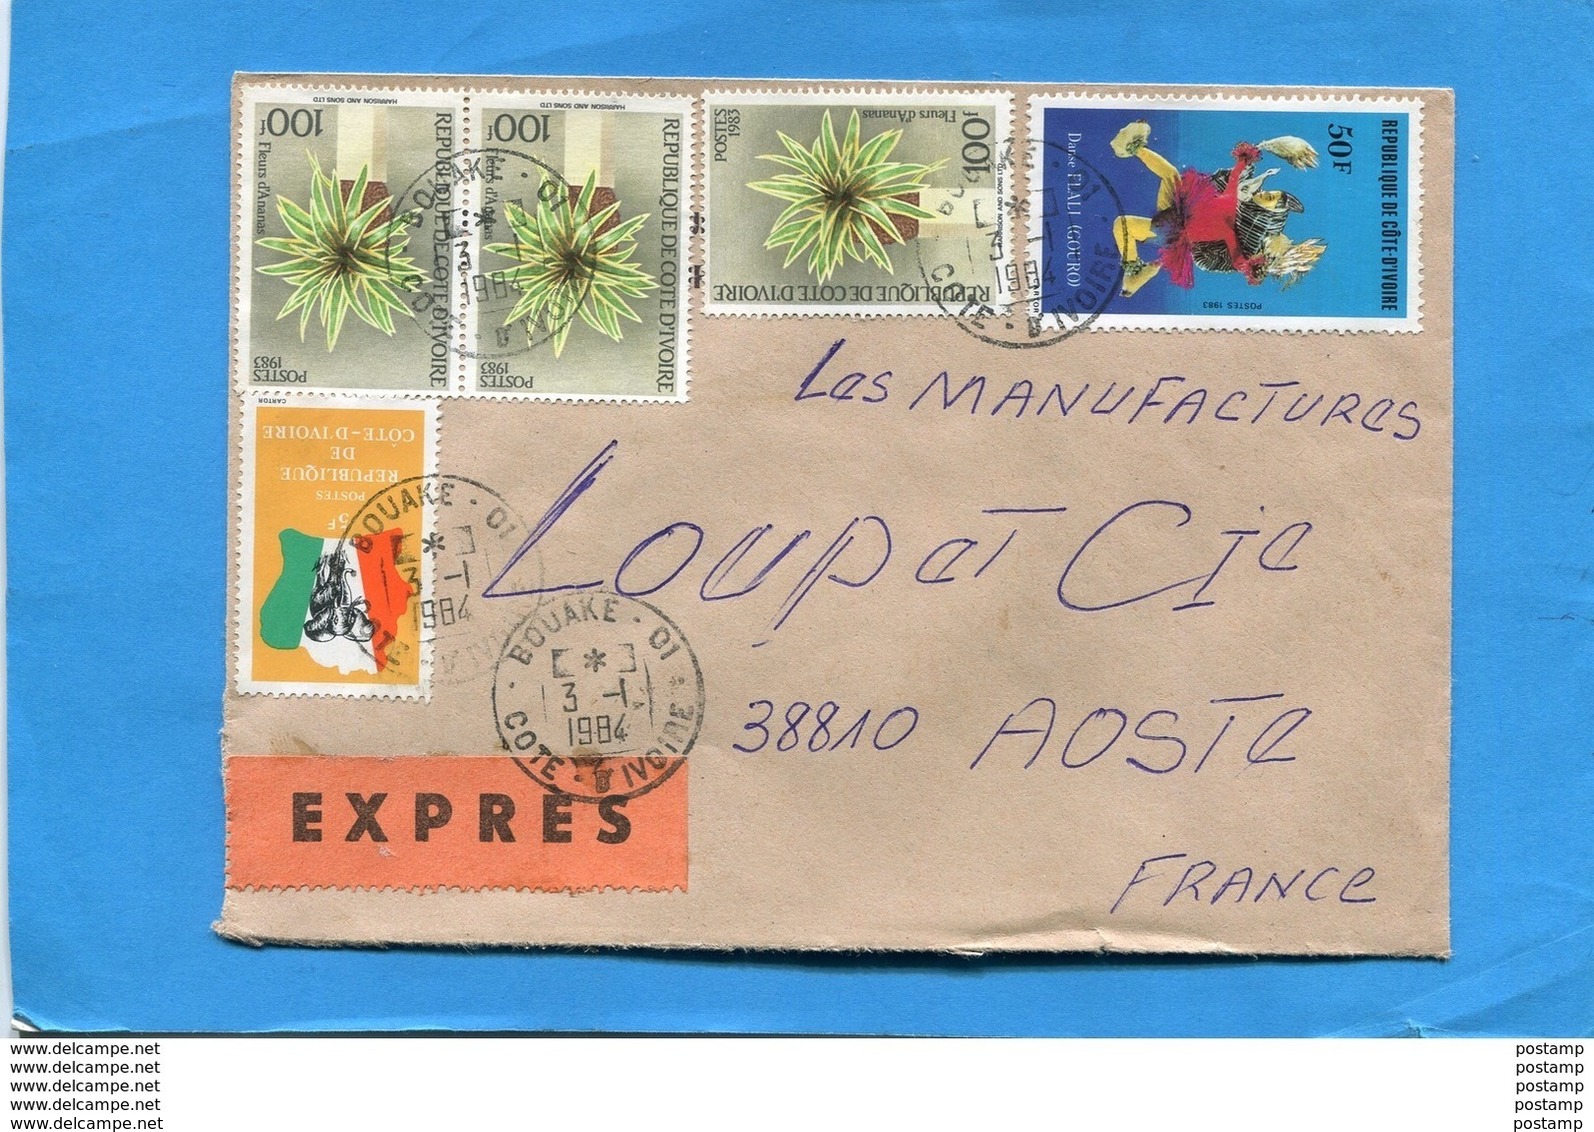 MARCOPHILIE Lettre EXPRES-cote D'ivoire>Françe-cad-bouaké-1984-**RARE**stampsX3- N°675C - Côte D'Ivoire (1960-...)